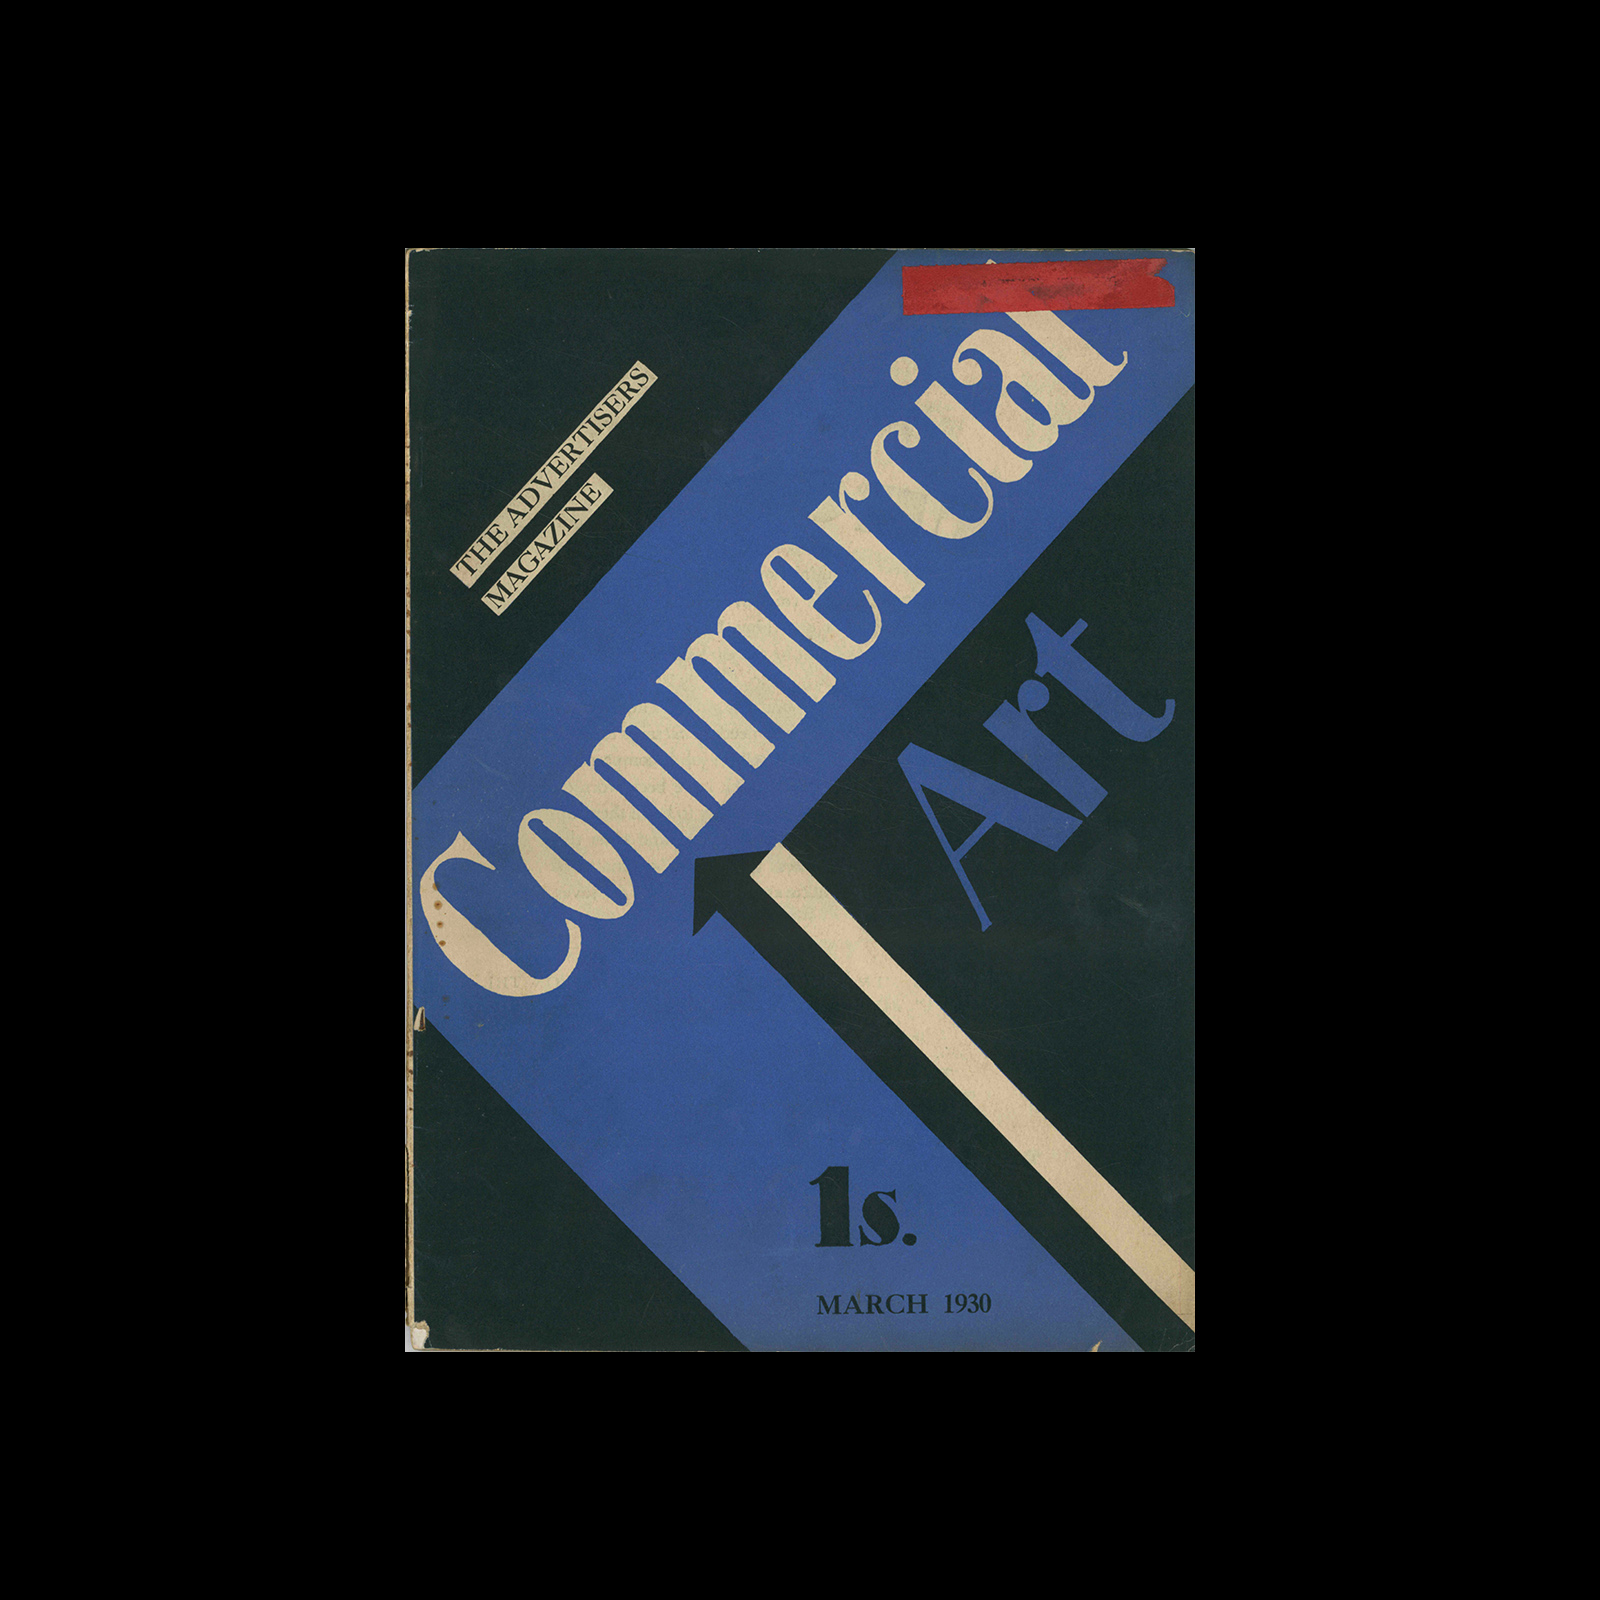 Commercial Art Vol 8, No 45, March 1930